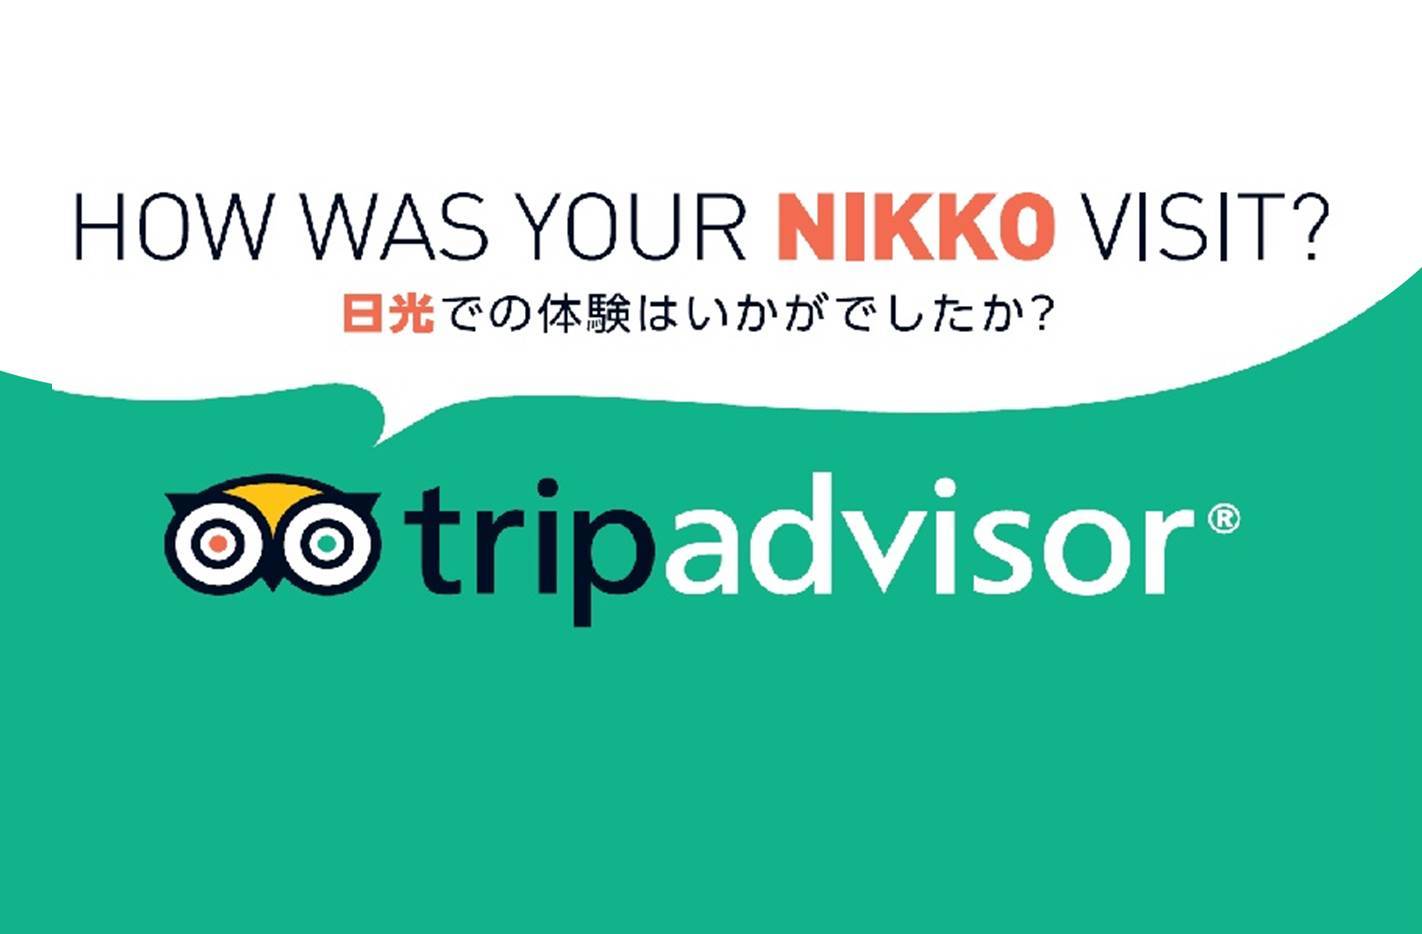 มารีวิวประสบการณ์การท่องเที่ยวที่นิกโก้ได้ที่ tripadvisor กัน!